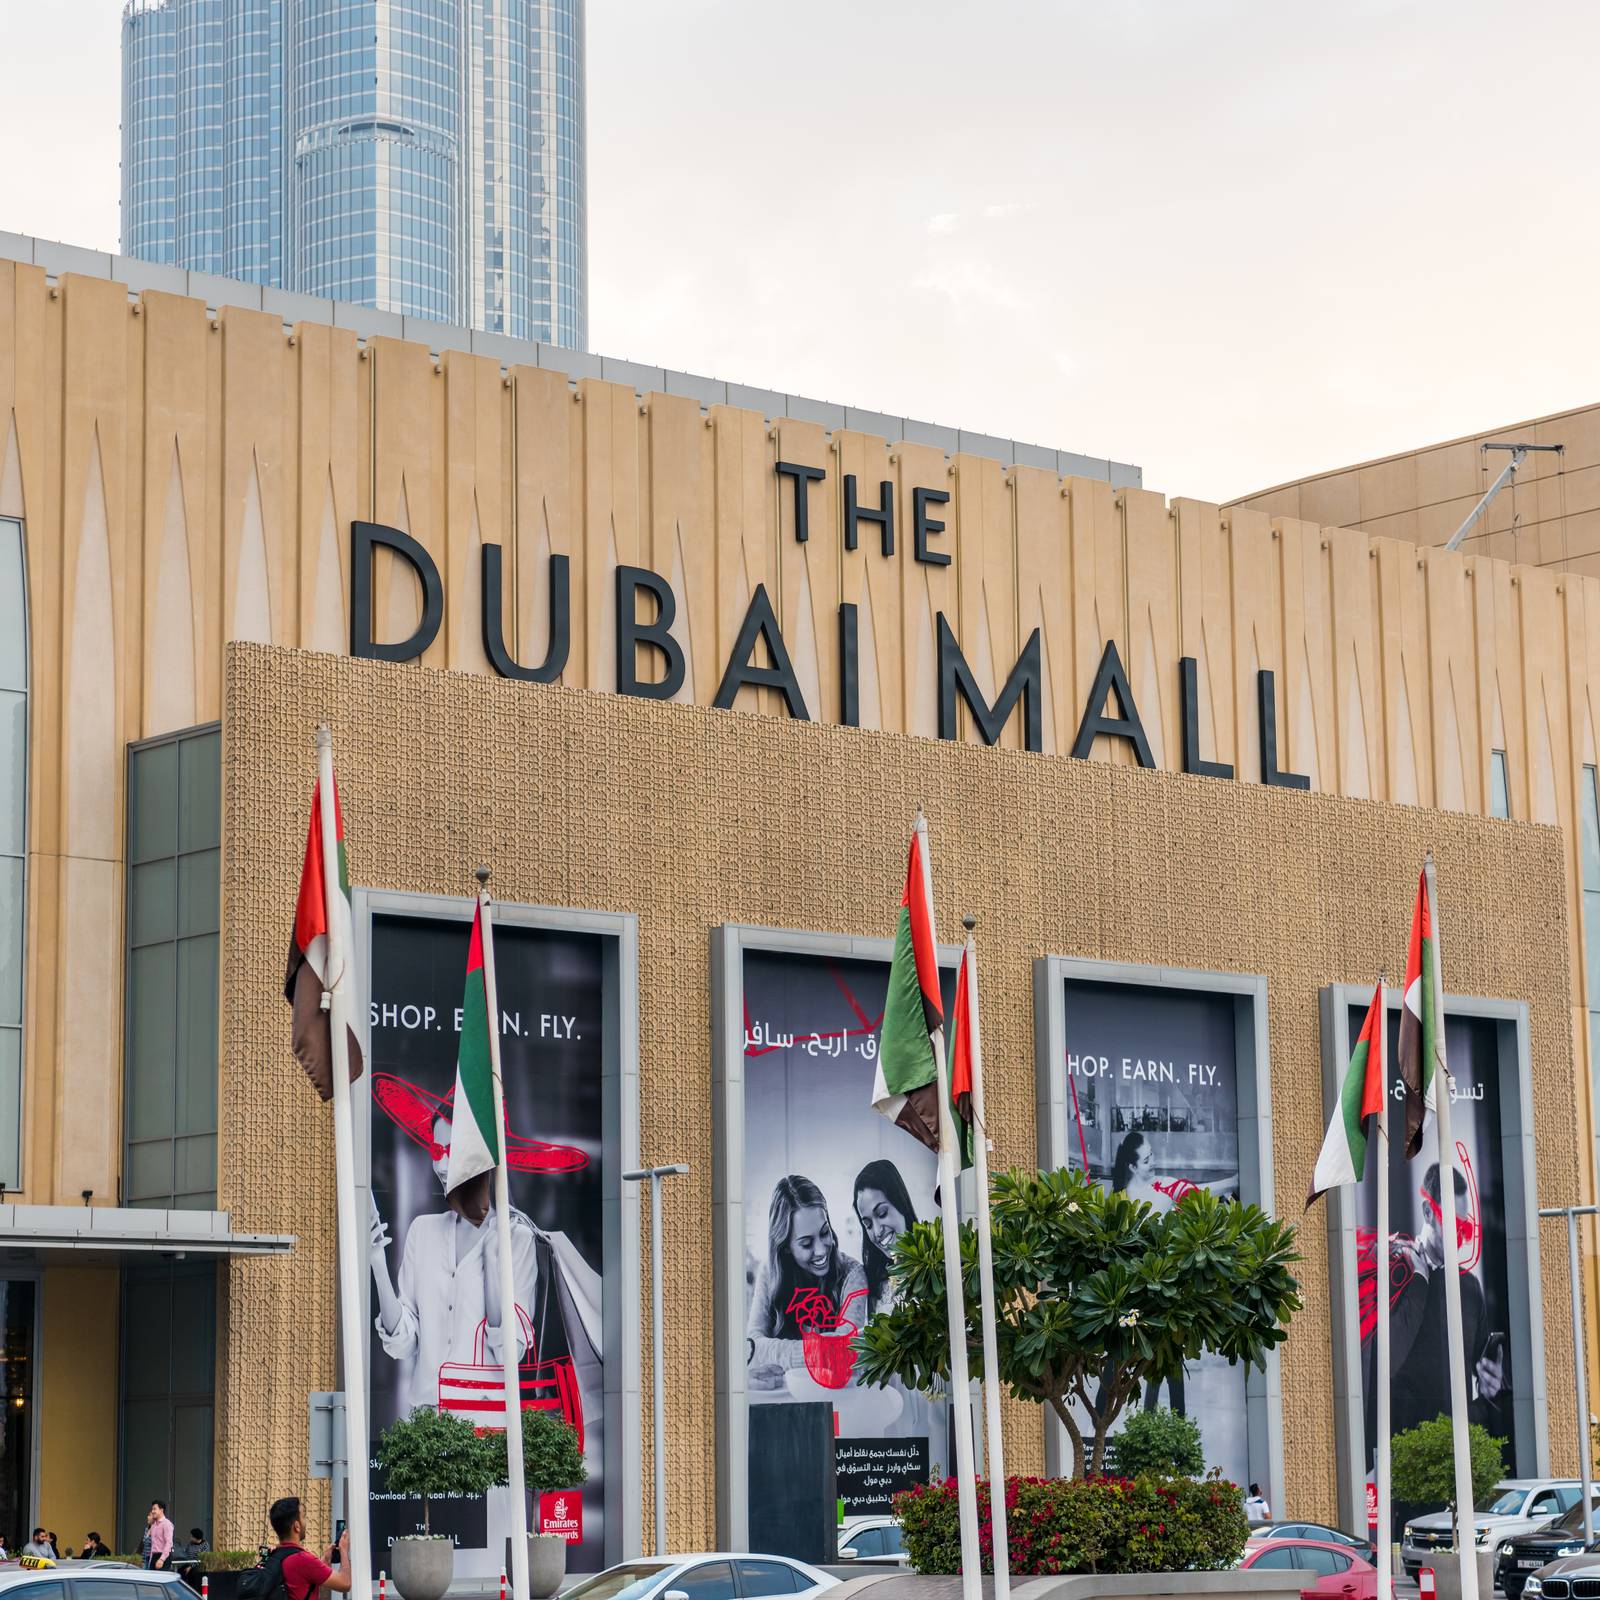 The Dubai Malll